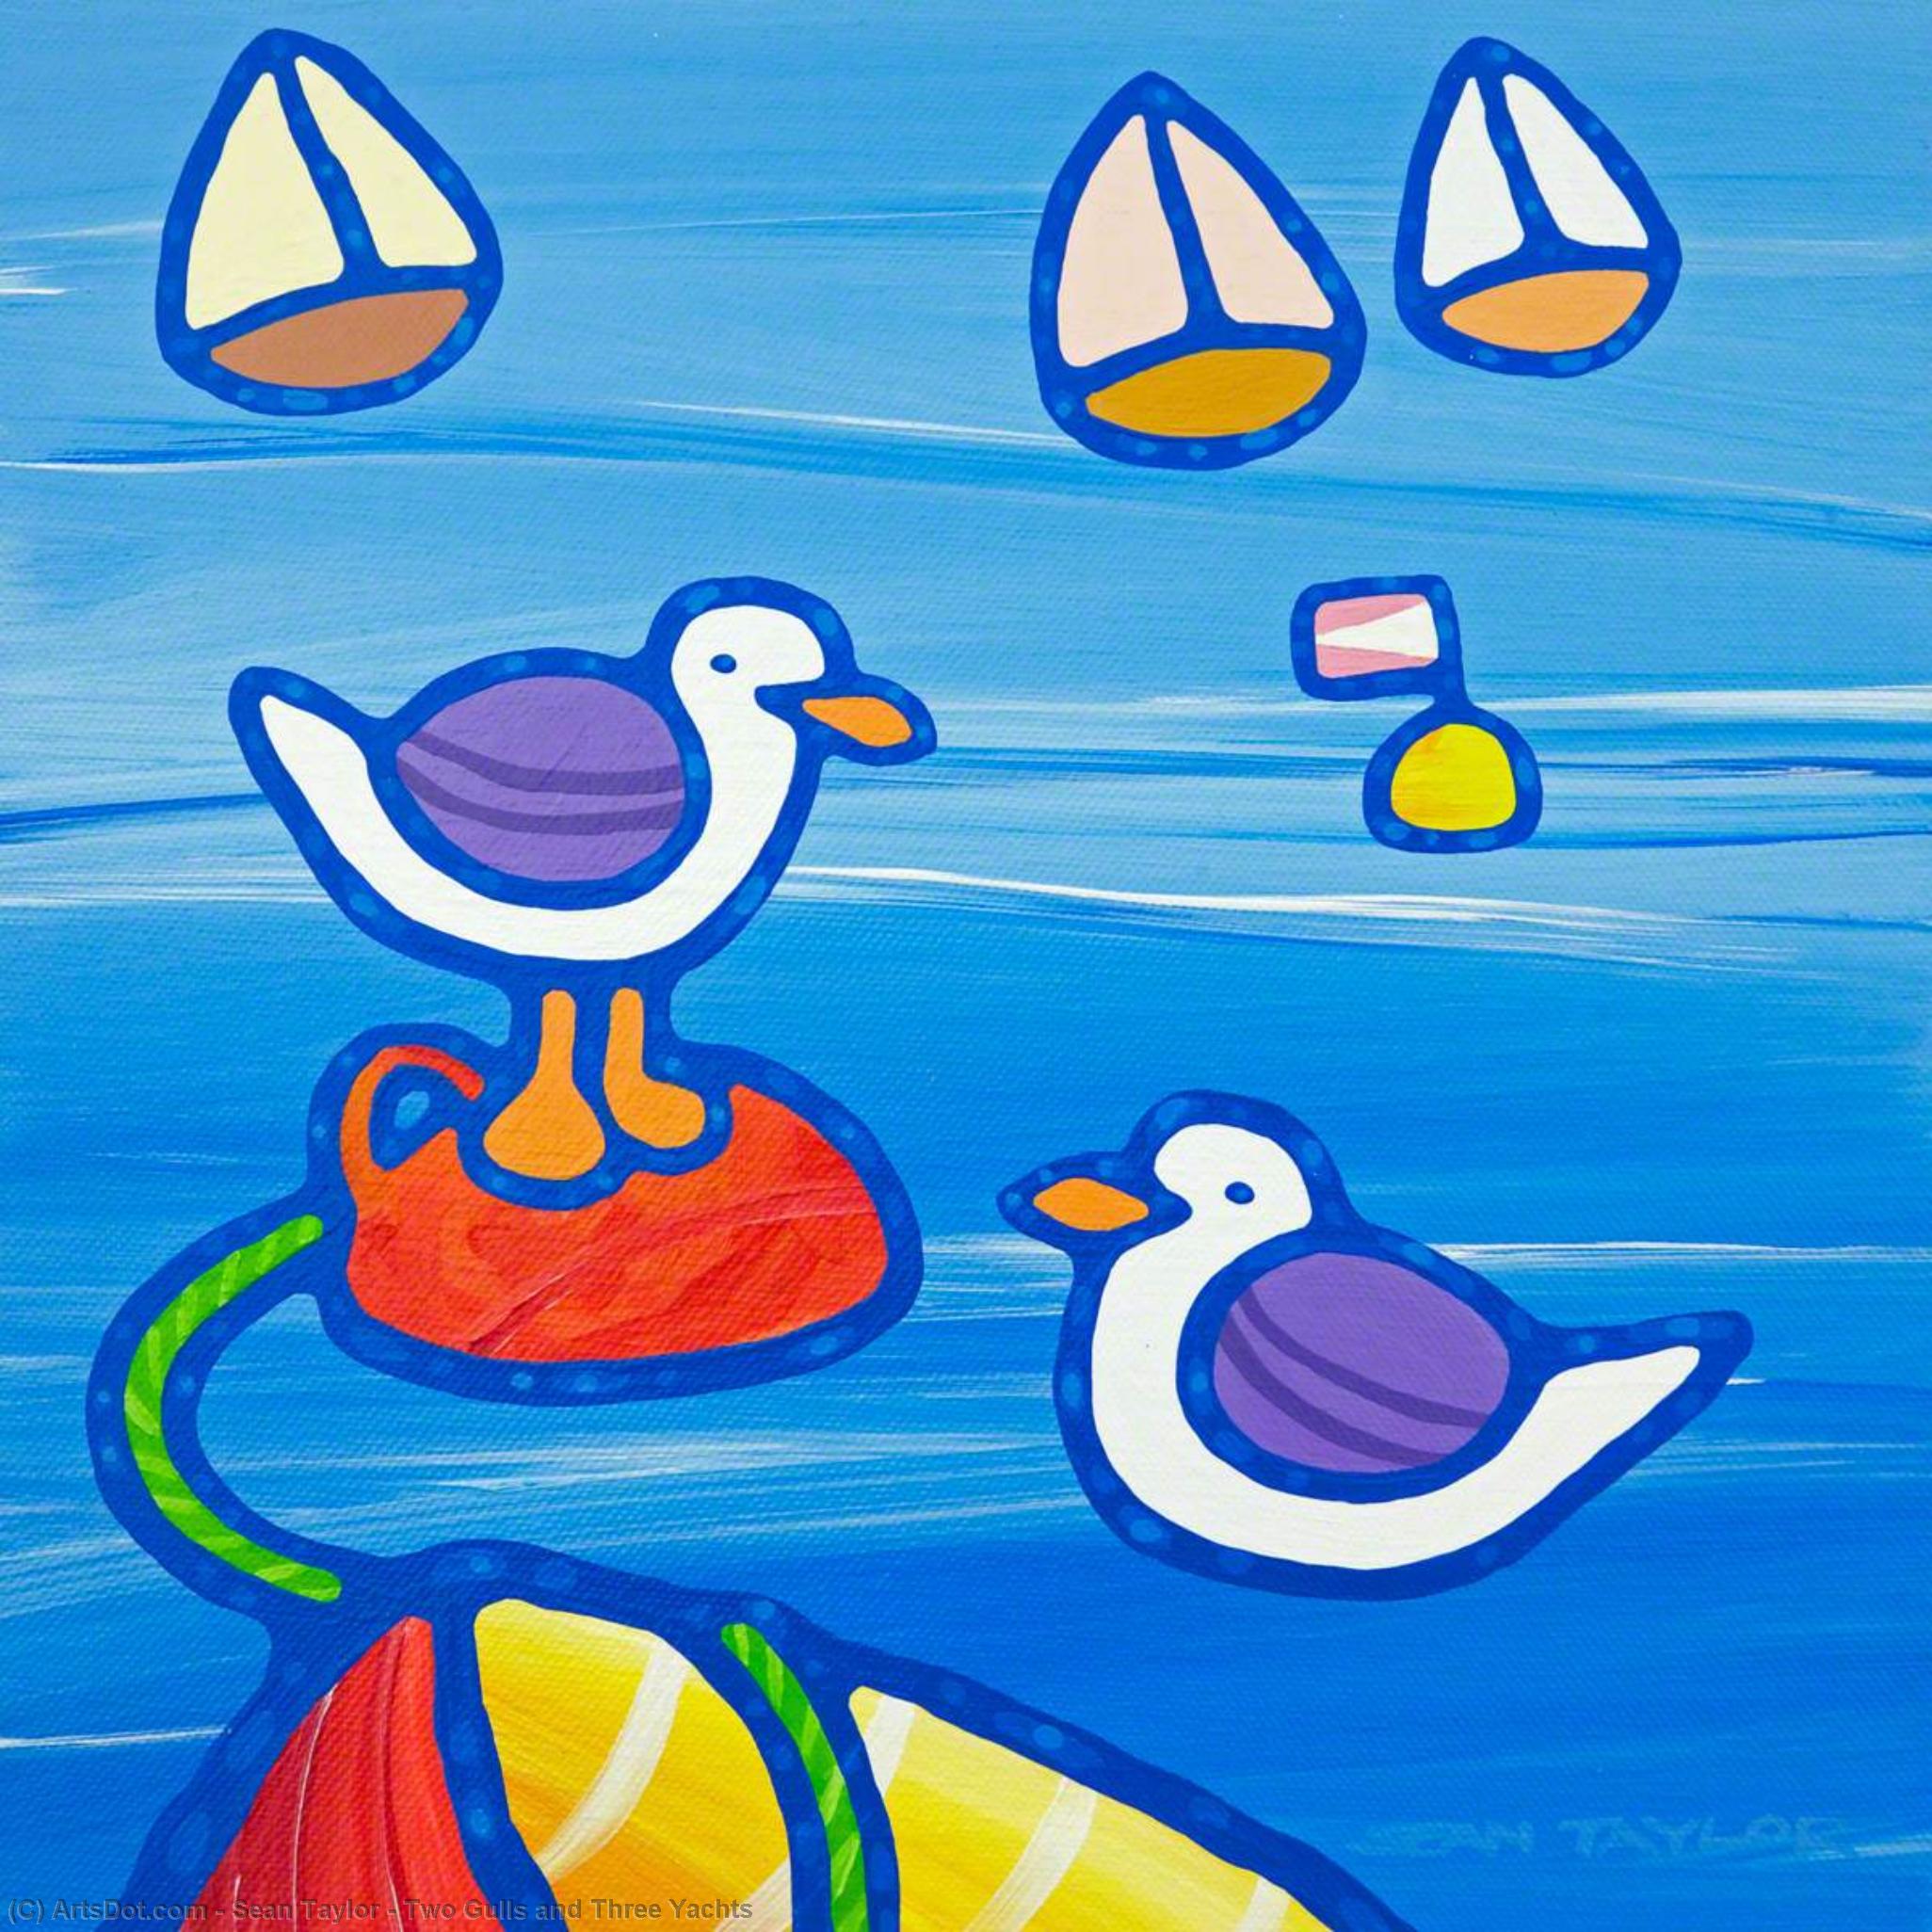 Two Gulls and Three Yachts, 2008 by Sean Taylor Sean Taylor | ArtsDot.com